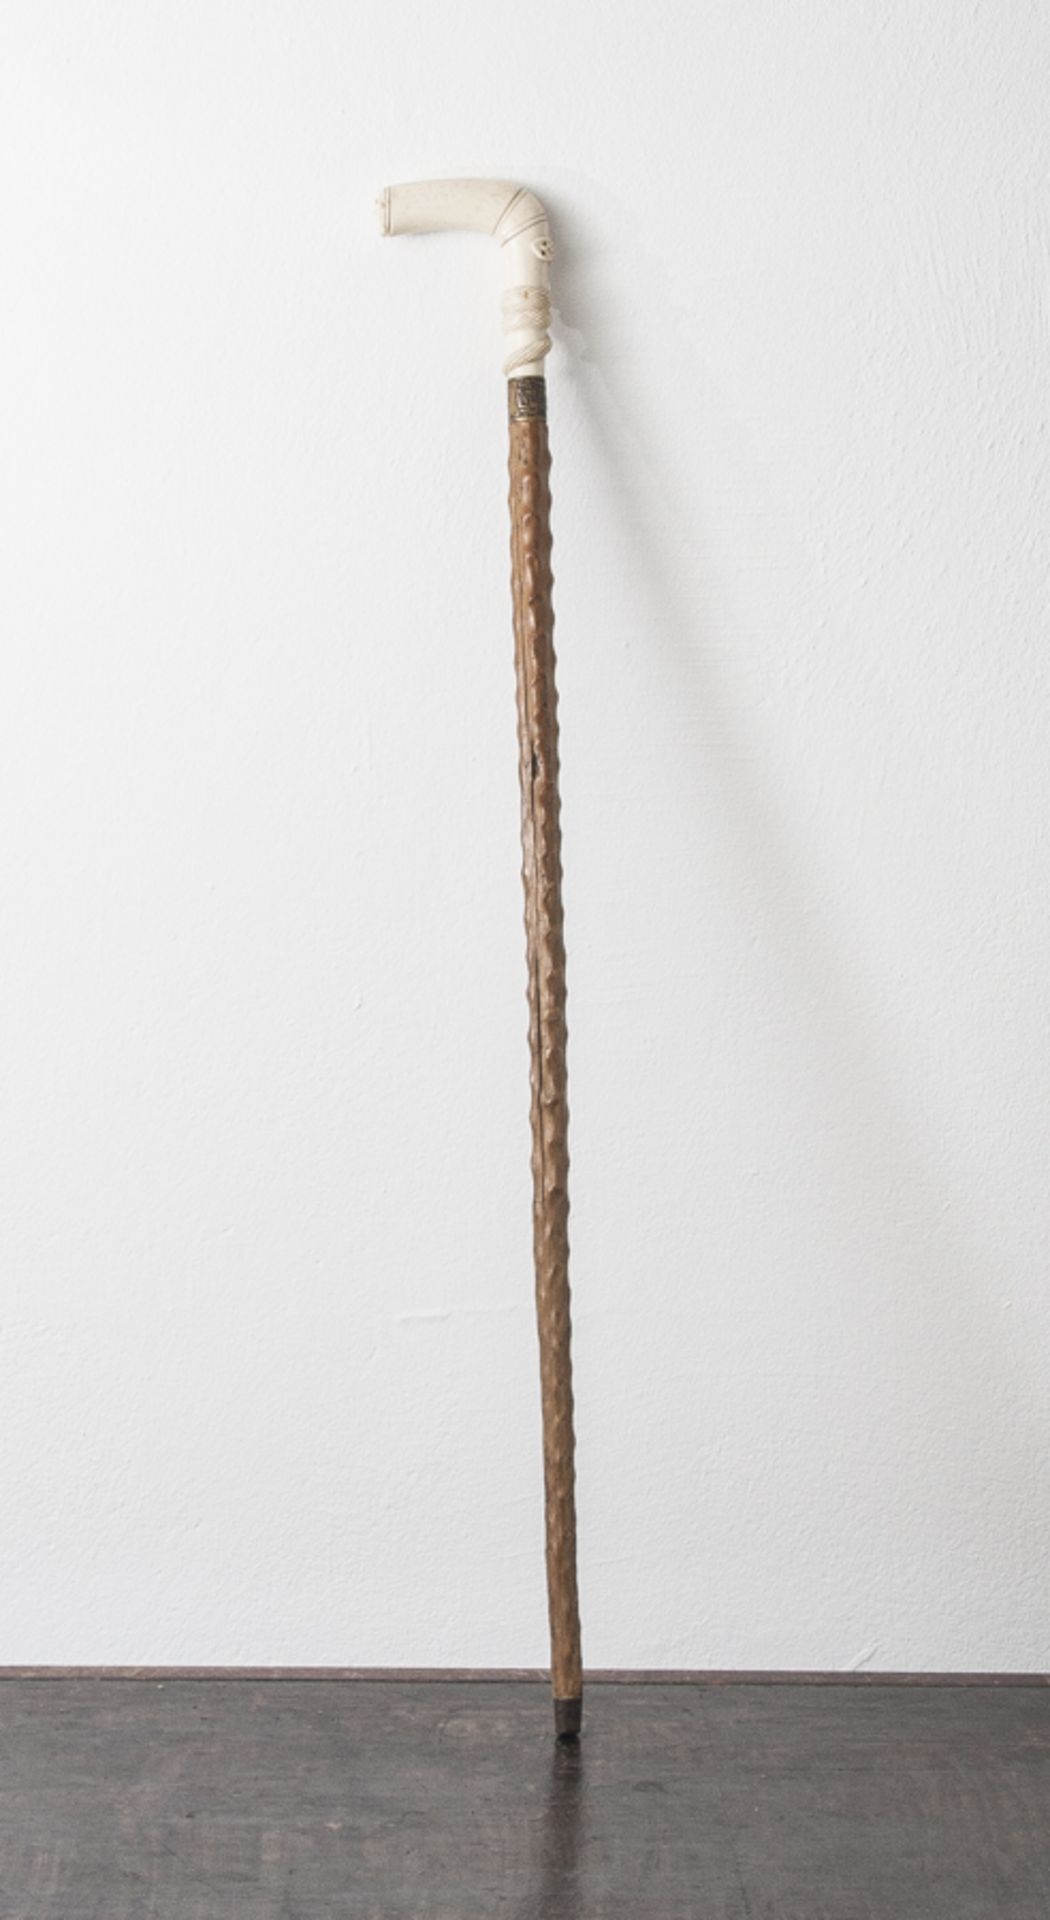 Gehstock, Griff aus Bein geschnitzt, umwunden von einer Schlange, um 1900.